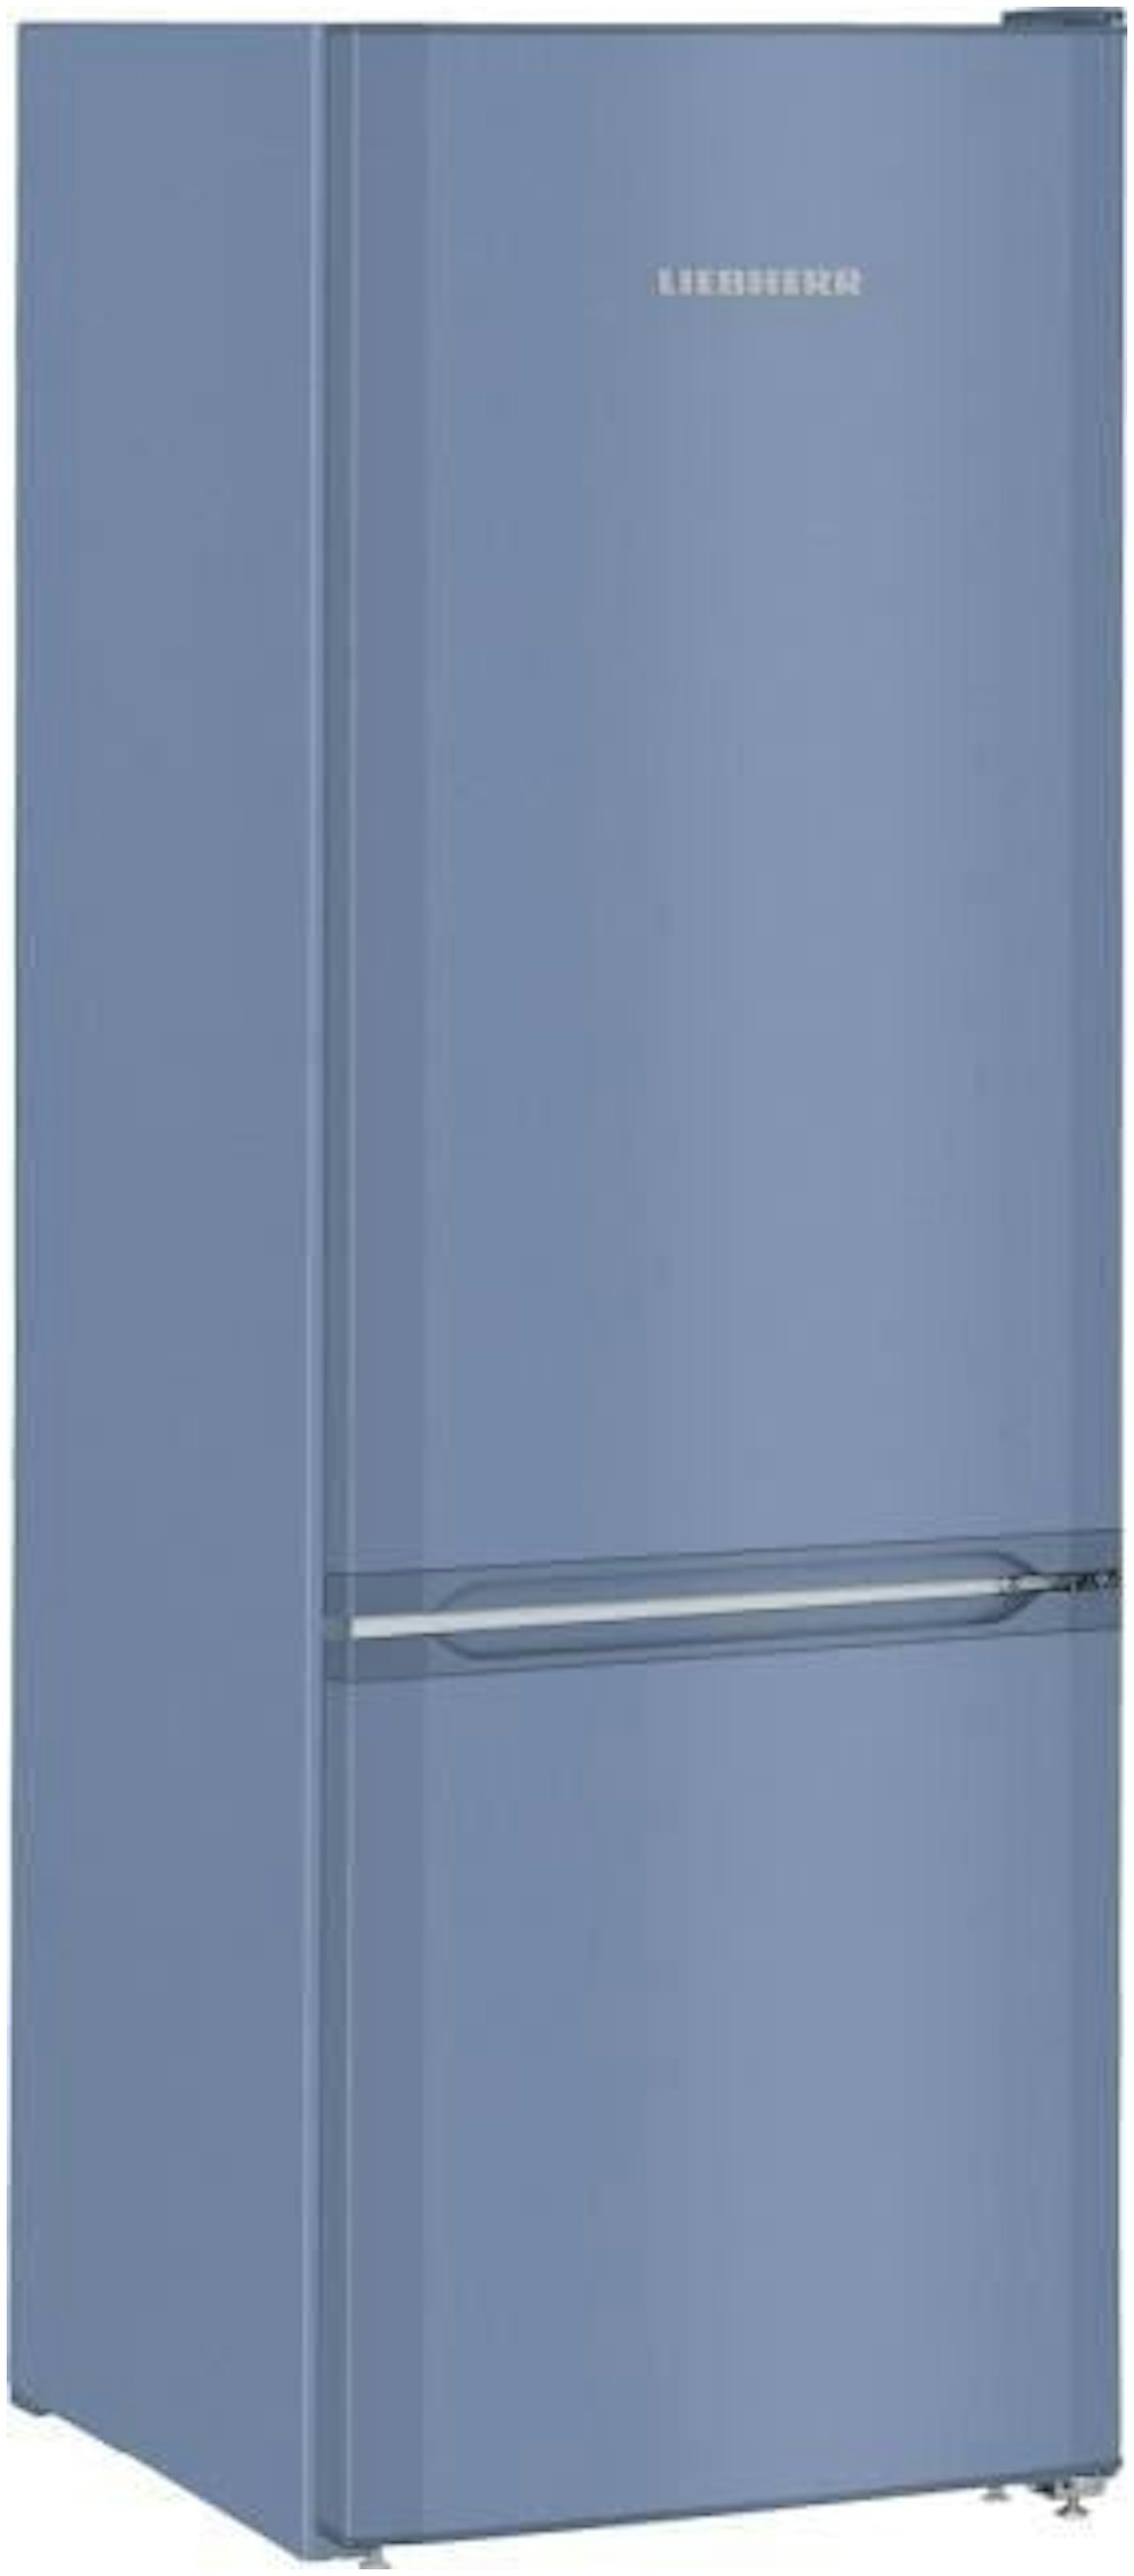 Verandering Bacteriën Gestaag Blauwe koelkast kopen? - Alle koelkasten in de kleur blauw!